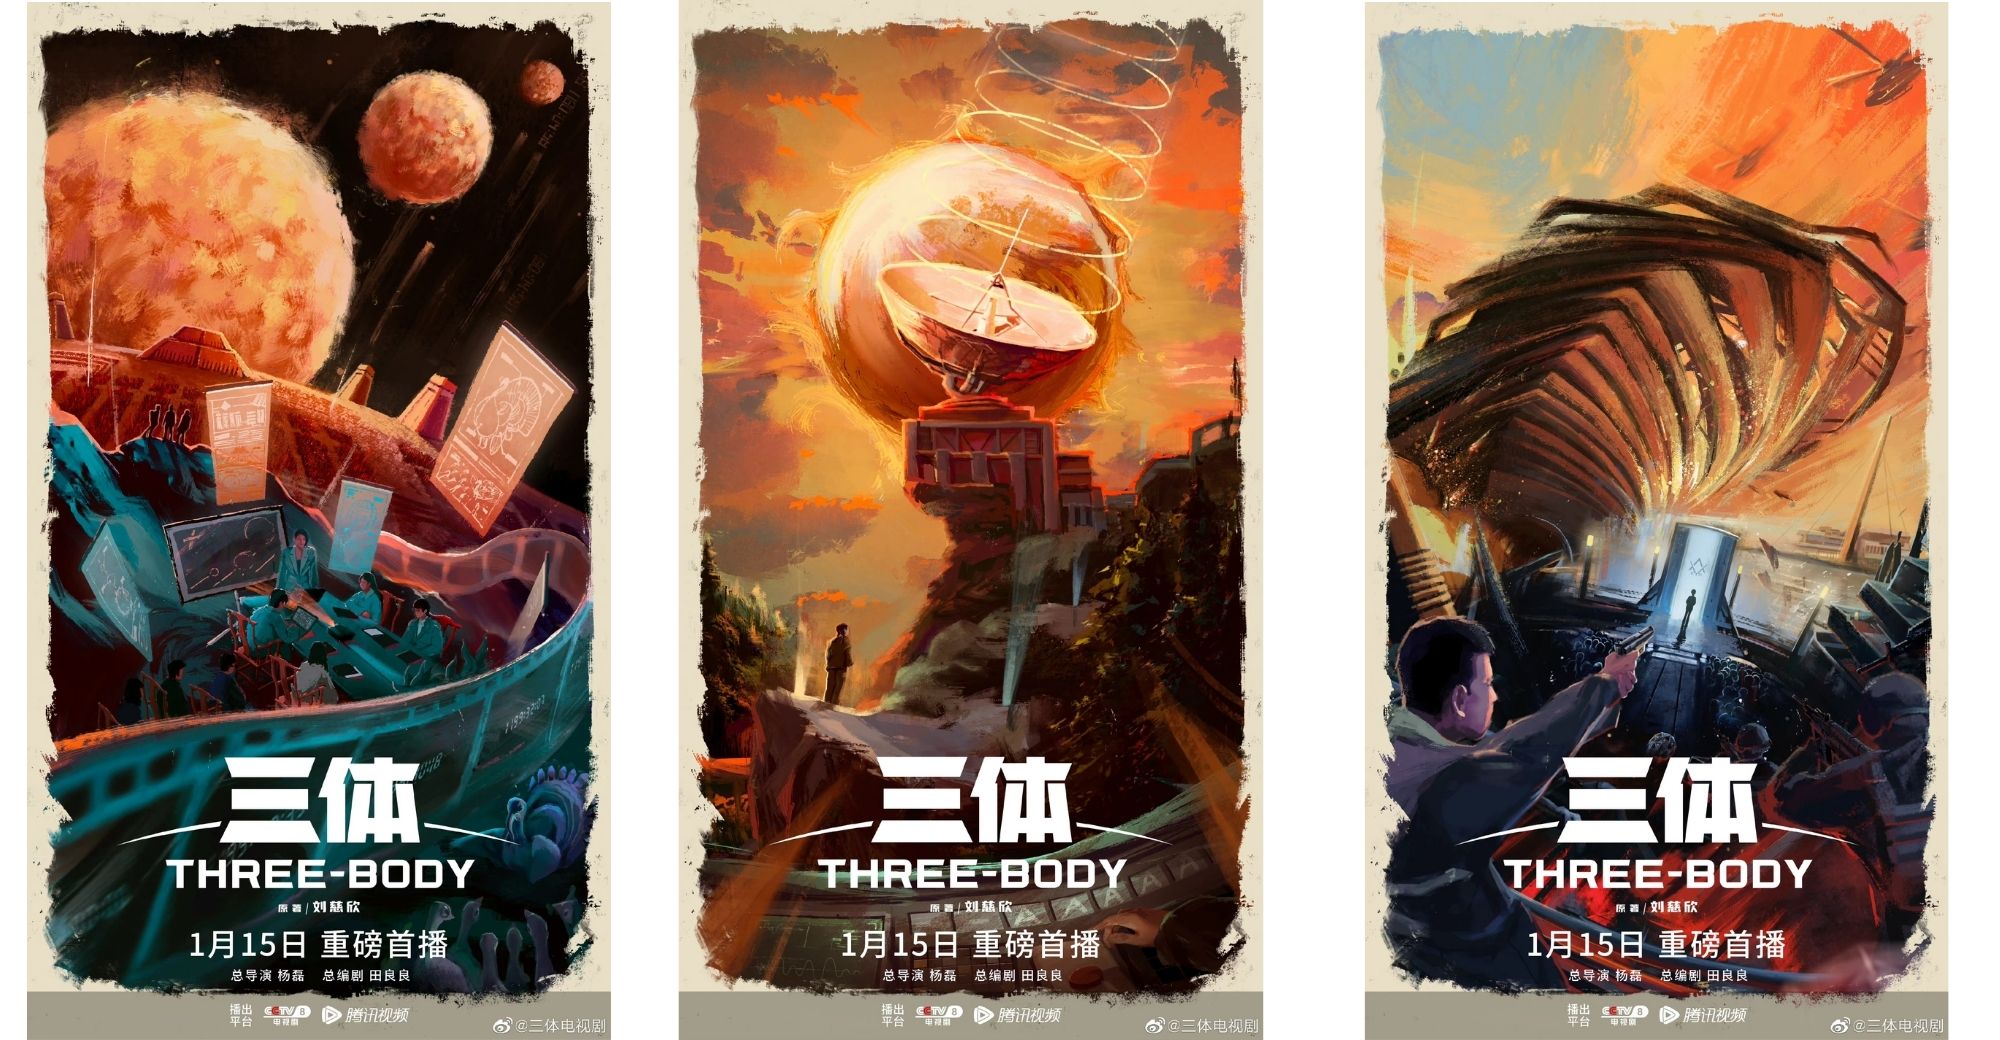 Espectacular trailer de la adaptación china de 'El problema de los tres  cuerpos', adelantándose de forma demoledora a la versión de Netflix